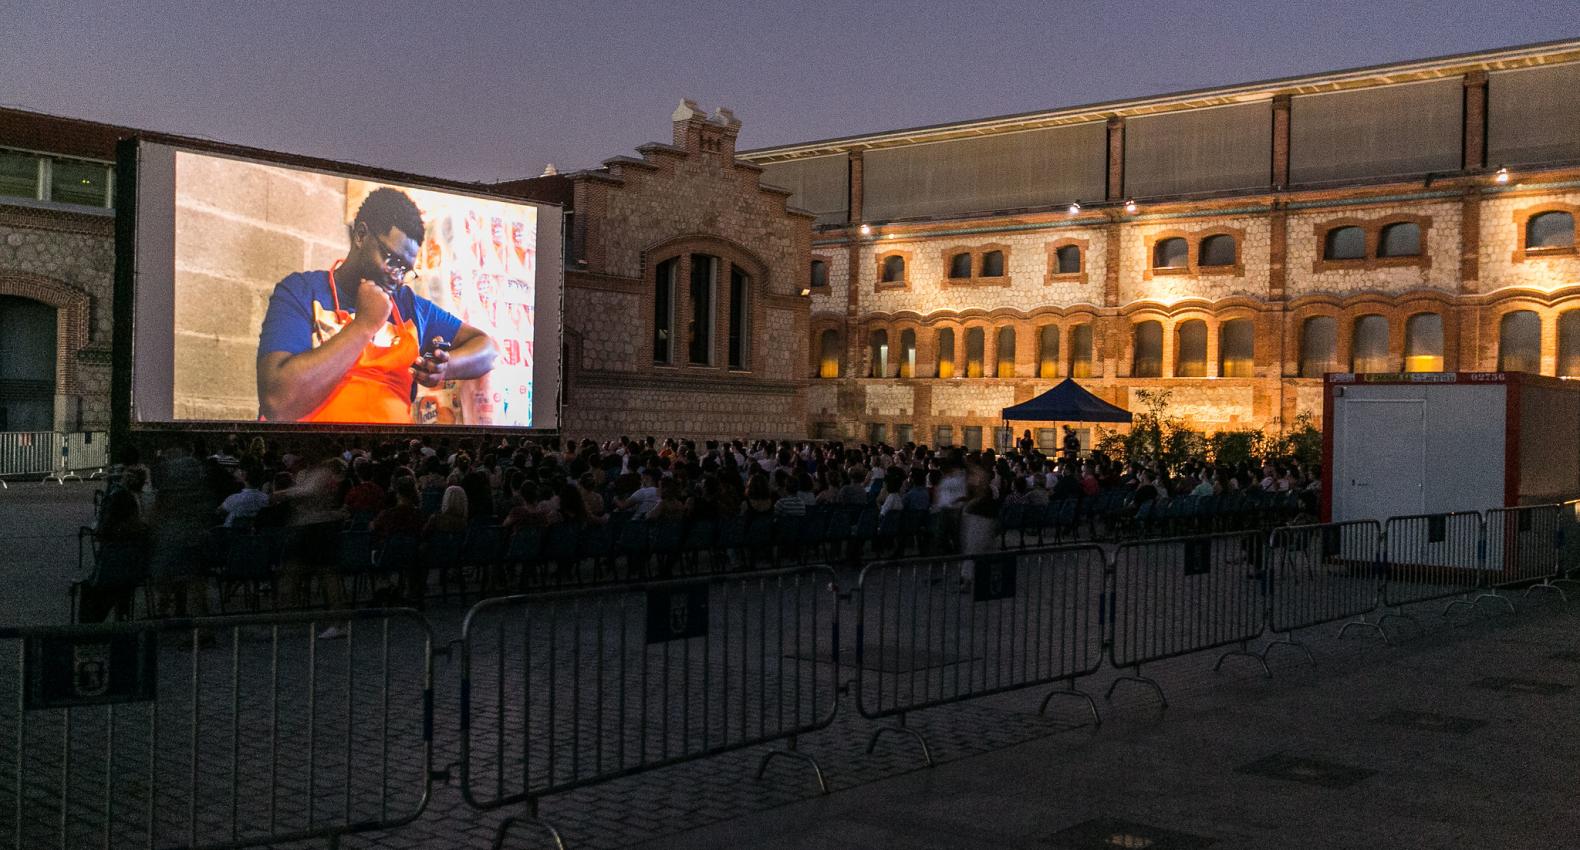 CinePlaza de verano, el mejor cine inédito al aire libre en Madrid Matadero Madrid